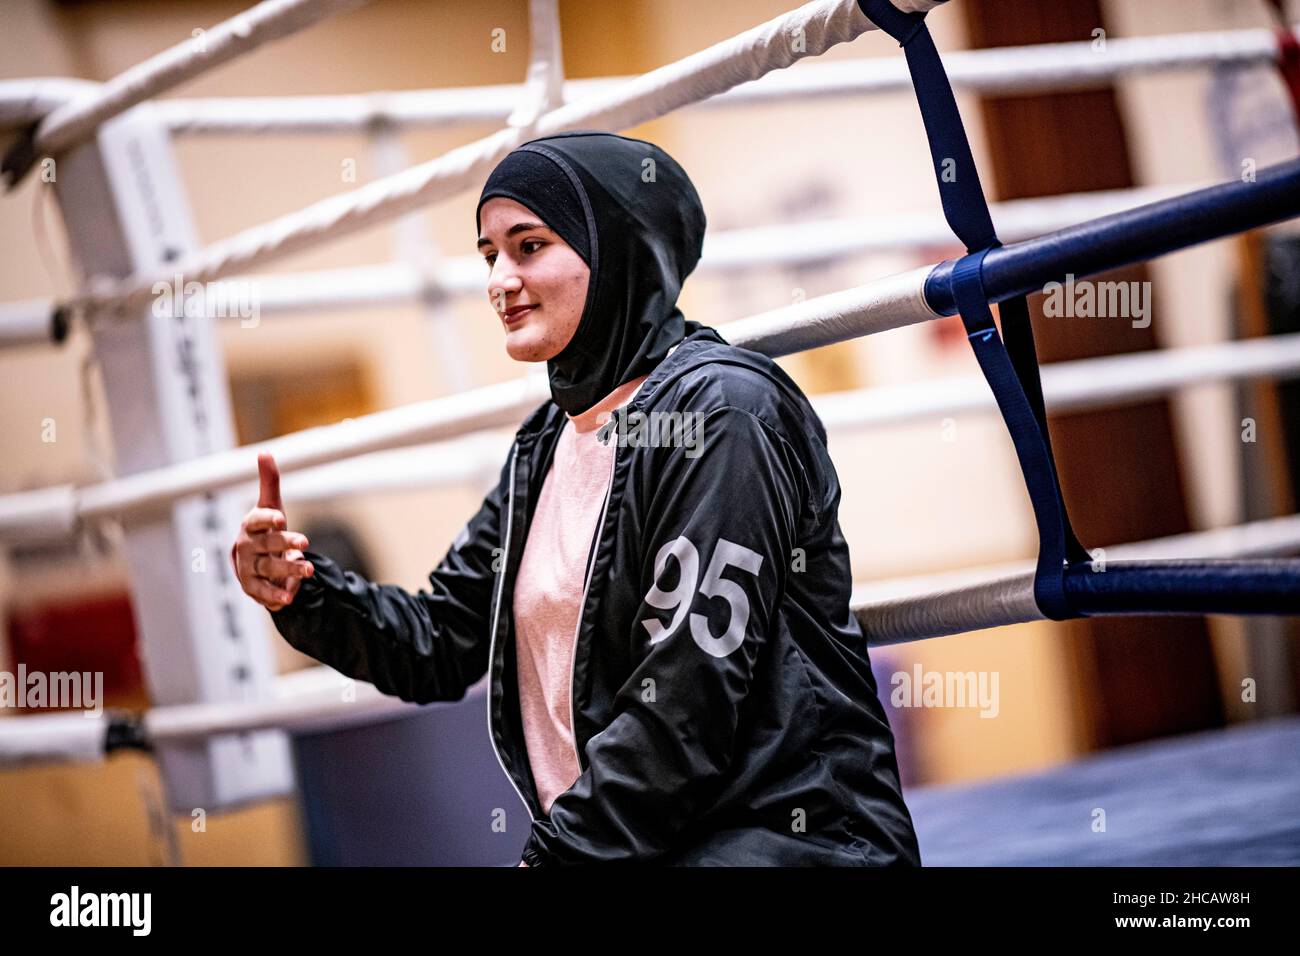 16 décembre 2021, Berlin: L'entraîneur de boxe Doha Taha Beydoun est assis sur la touche du ring de boxe.Elle n'a que 20 ans.Marié.Quatre mois de grossesse.Musulman et un entraîneur de boxe.Ses parents ont émigré du Liban vers l'Allemagne quand elle était bébé.Doha Taha Beydoun semble 'trange' à certains, dit-elle, parce que sa nationalité, sa religion et son sport ne correspondent pas.D'autres la voient comme un modèle, comme elle le dit elle-même."Je lutte contre tous les préjugés", se donne la jeune femme avec confiance.(À dpa 'Mussim, femme, entraîneur de boxe - 'Je lutte contre tous les préjugés') photo: Fabian Sommer/dpa Banque D'Images